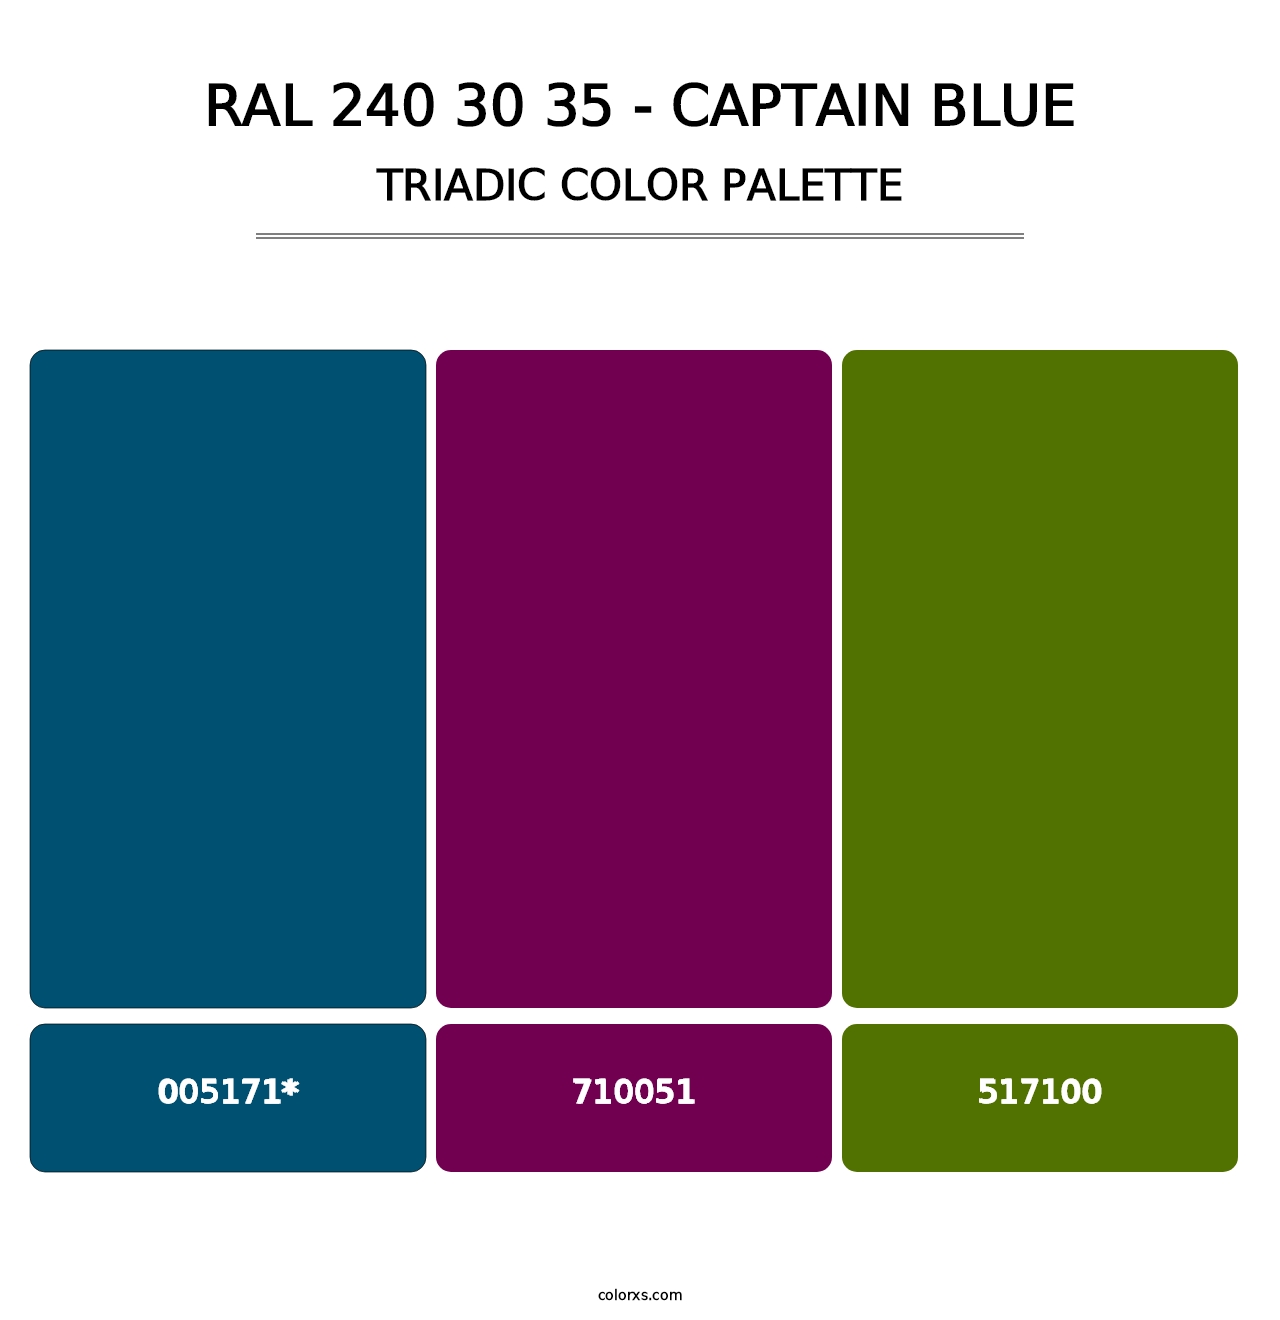 RAL 240 30 35 - Captain Blue - Triadic Color Palette